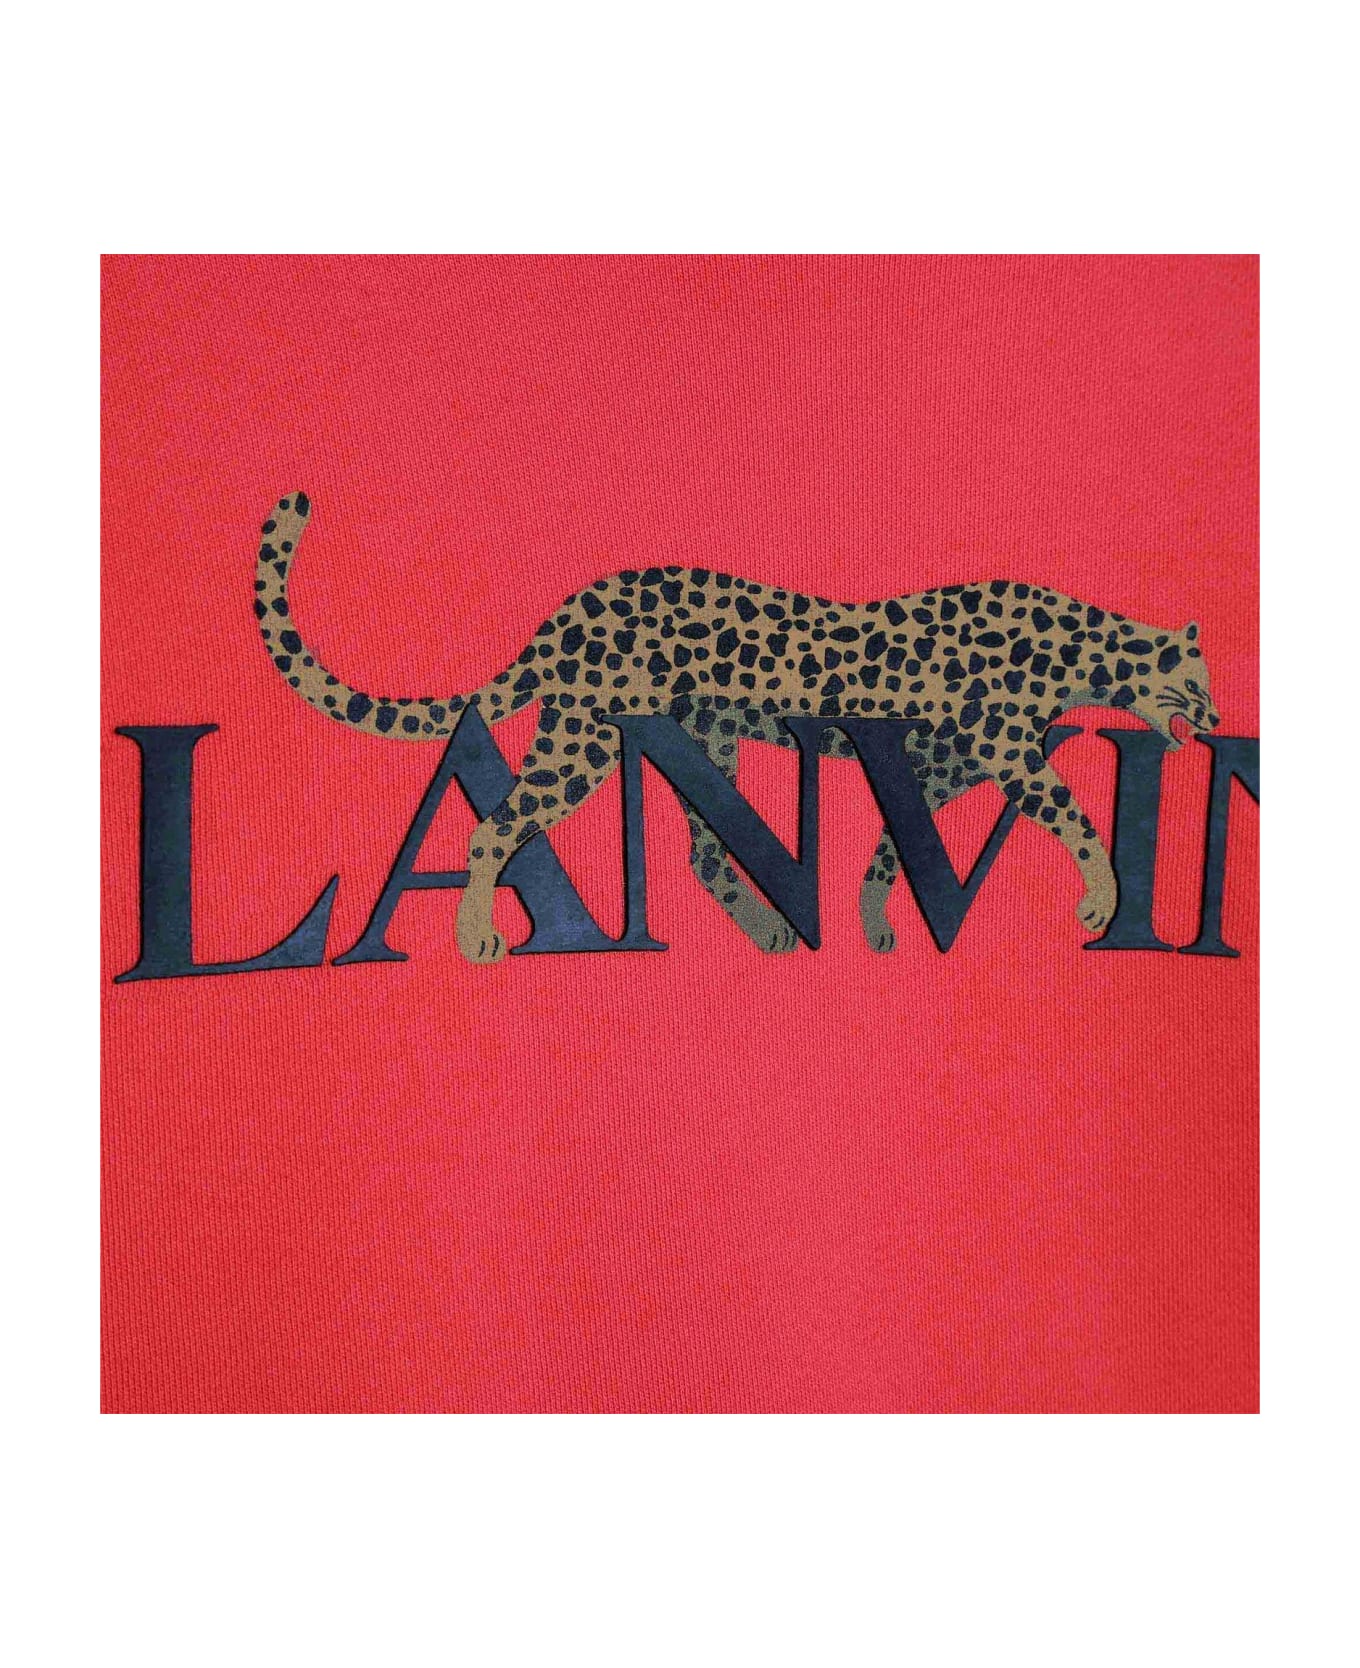 Lanvin Leopard-printed Crewneck Sweatshirt - Rosso Vivo